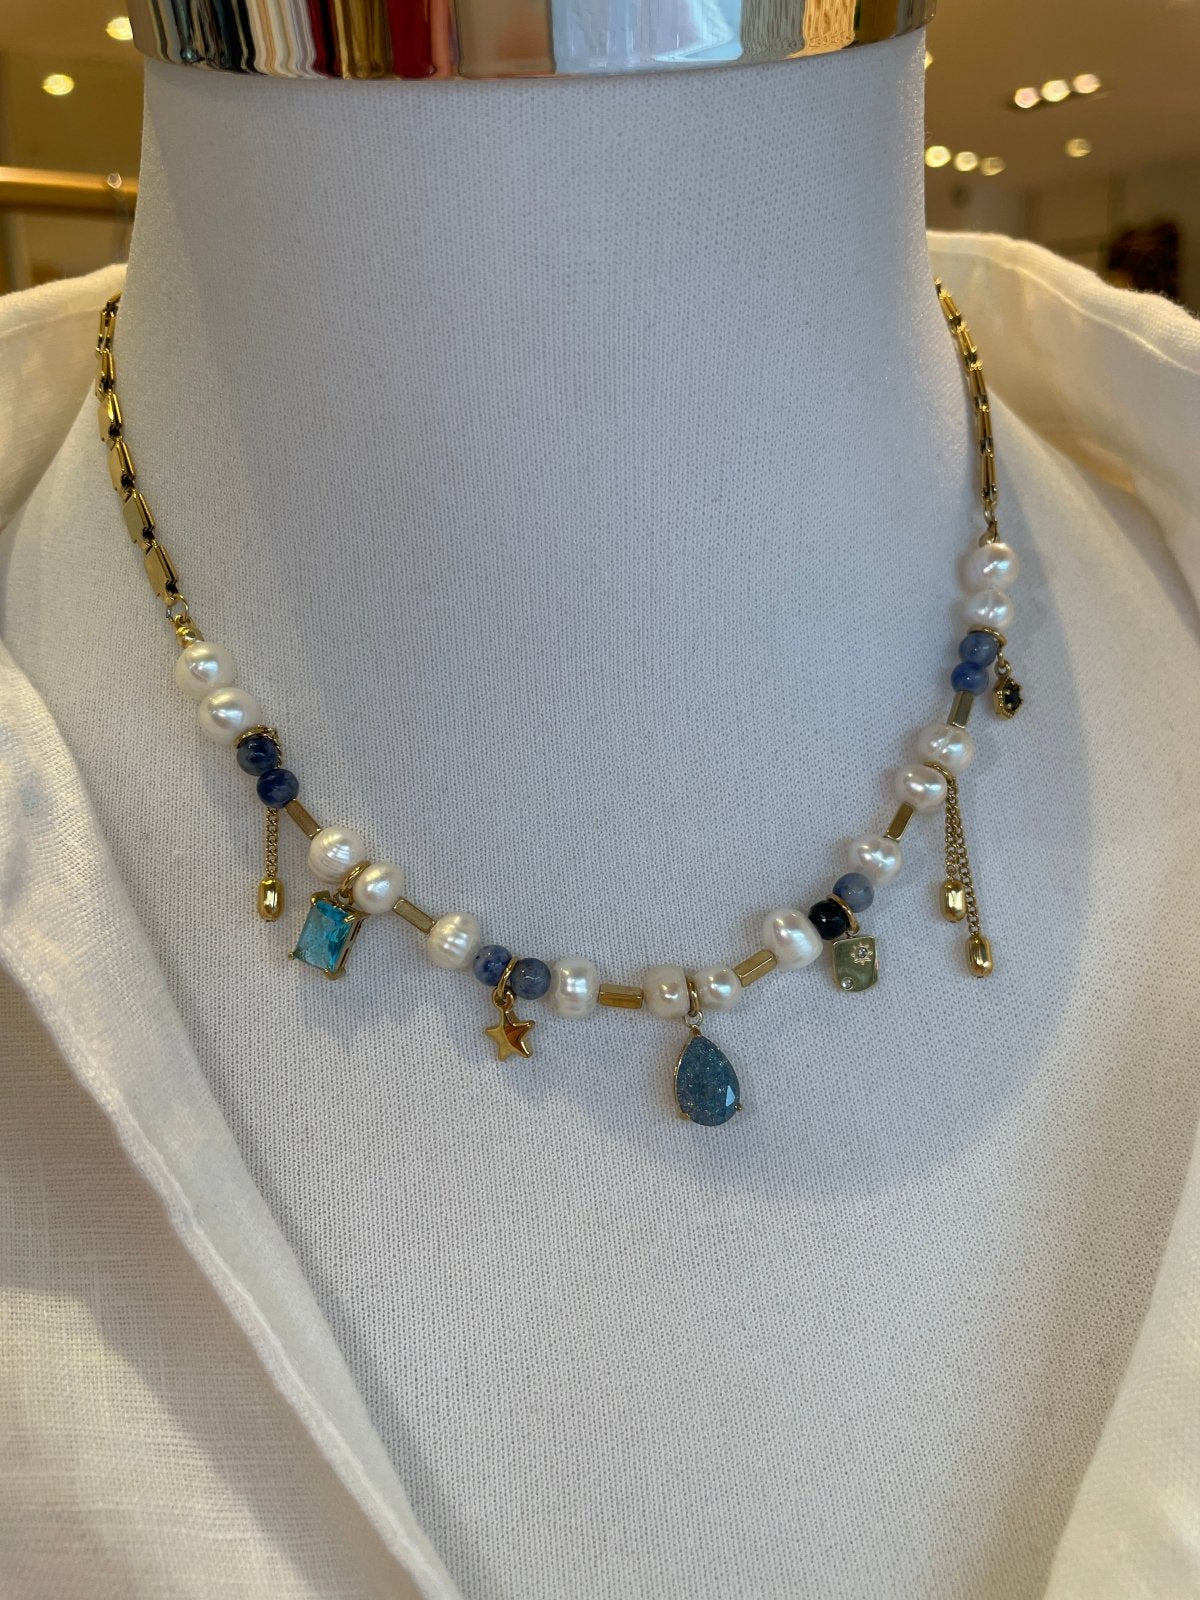 St Lucia Boutique Isla charm necklace - Shop women's Accessories at St Lucia Boutique